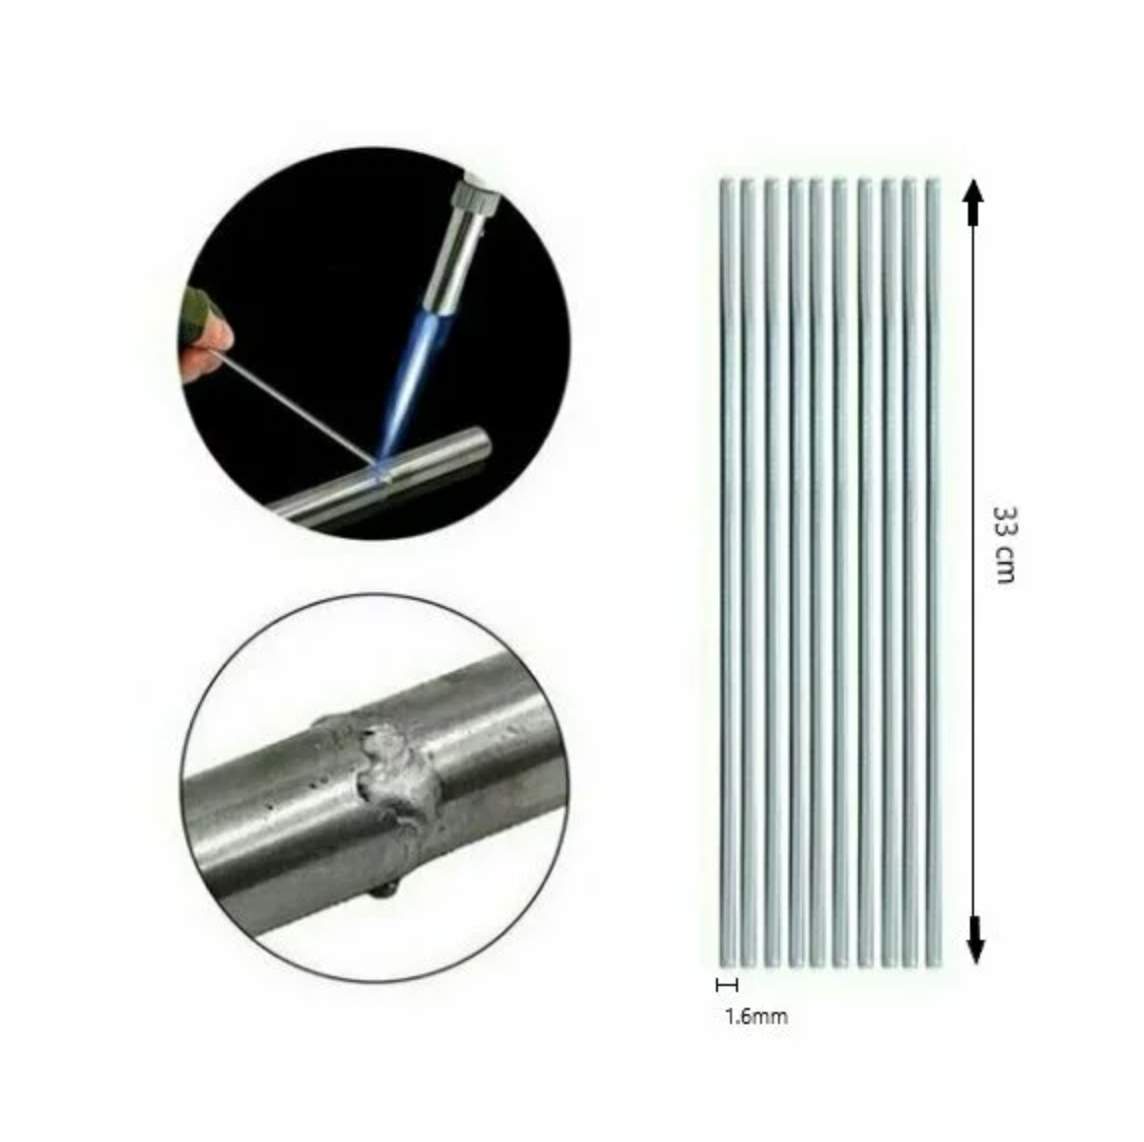 Set de 10 buc tije tip electrod pentru sudura (fara aparat de sudura)